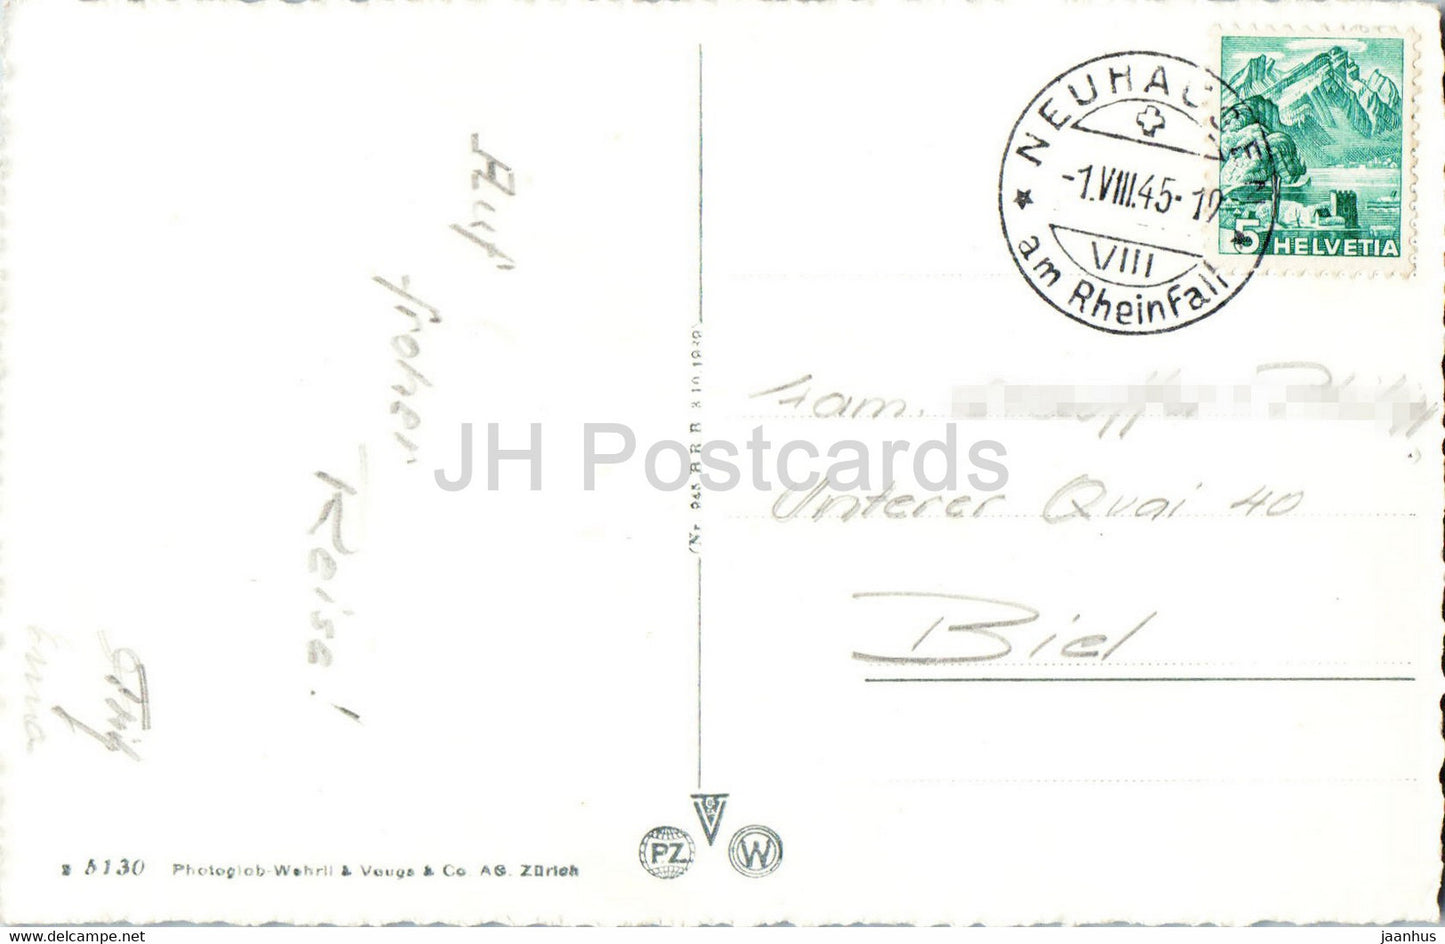 Schaffhausen - Rheinbrucke mit Munot - bridge - 5130 - old postcard - 1945 - Switzerland - used